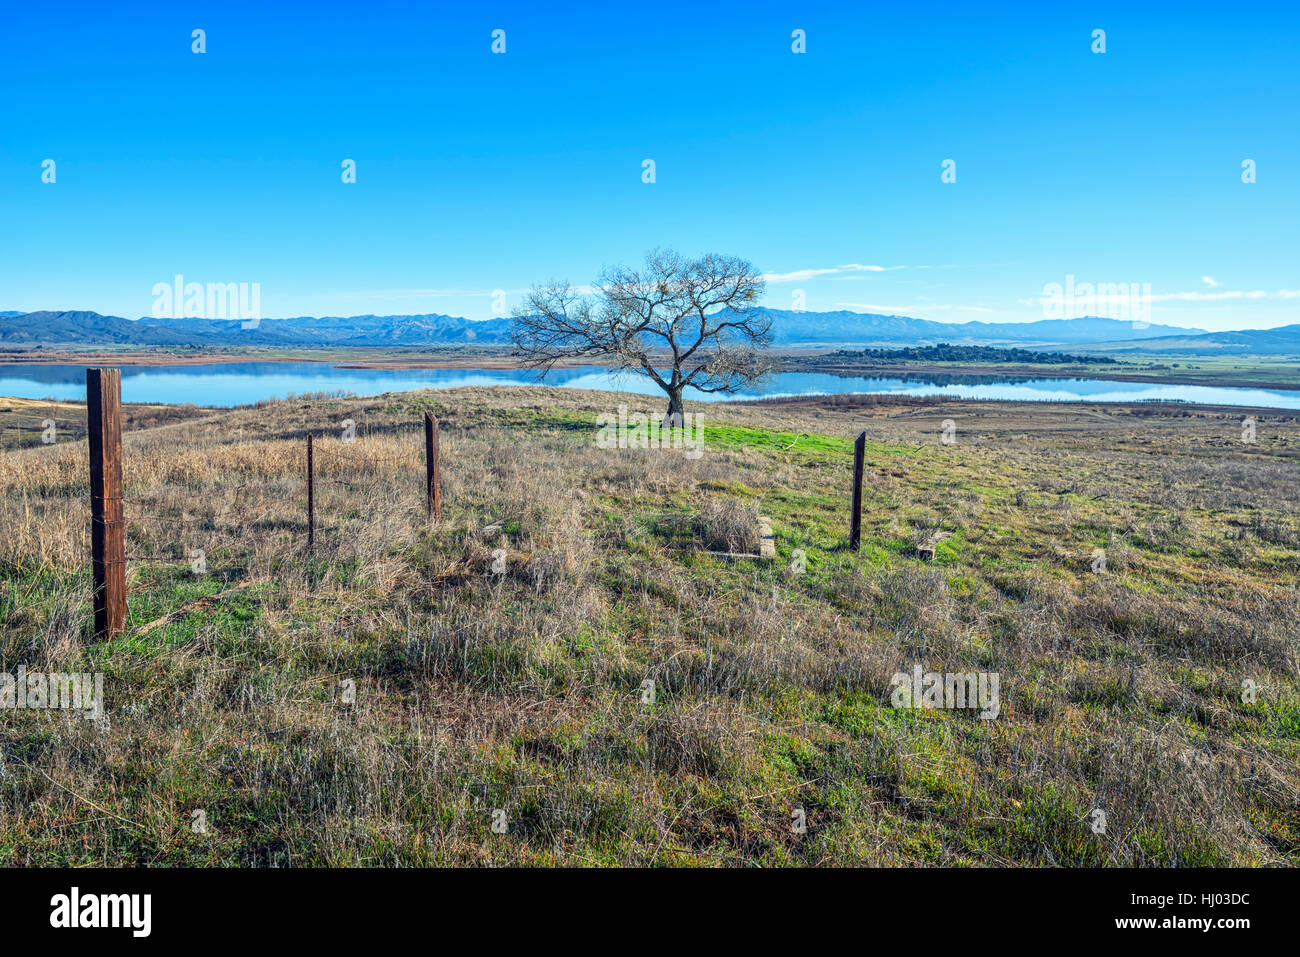 Vista de una pradera y el lago Henshaw. El condado de San Diego, California, Estados Unidos. Foto de stock